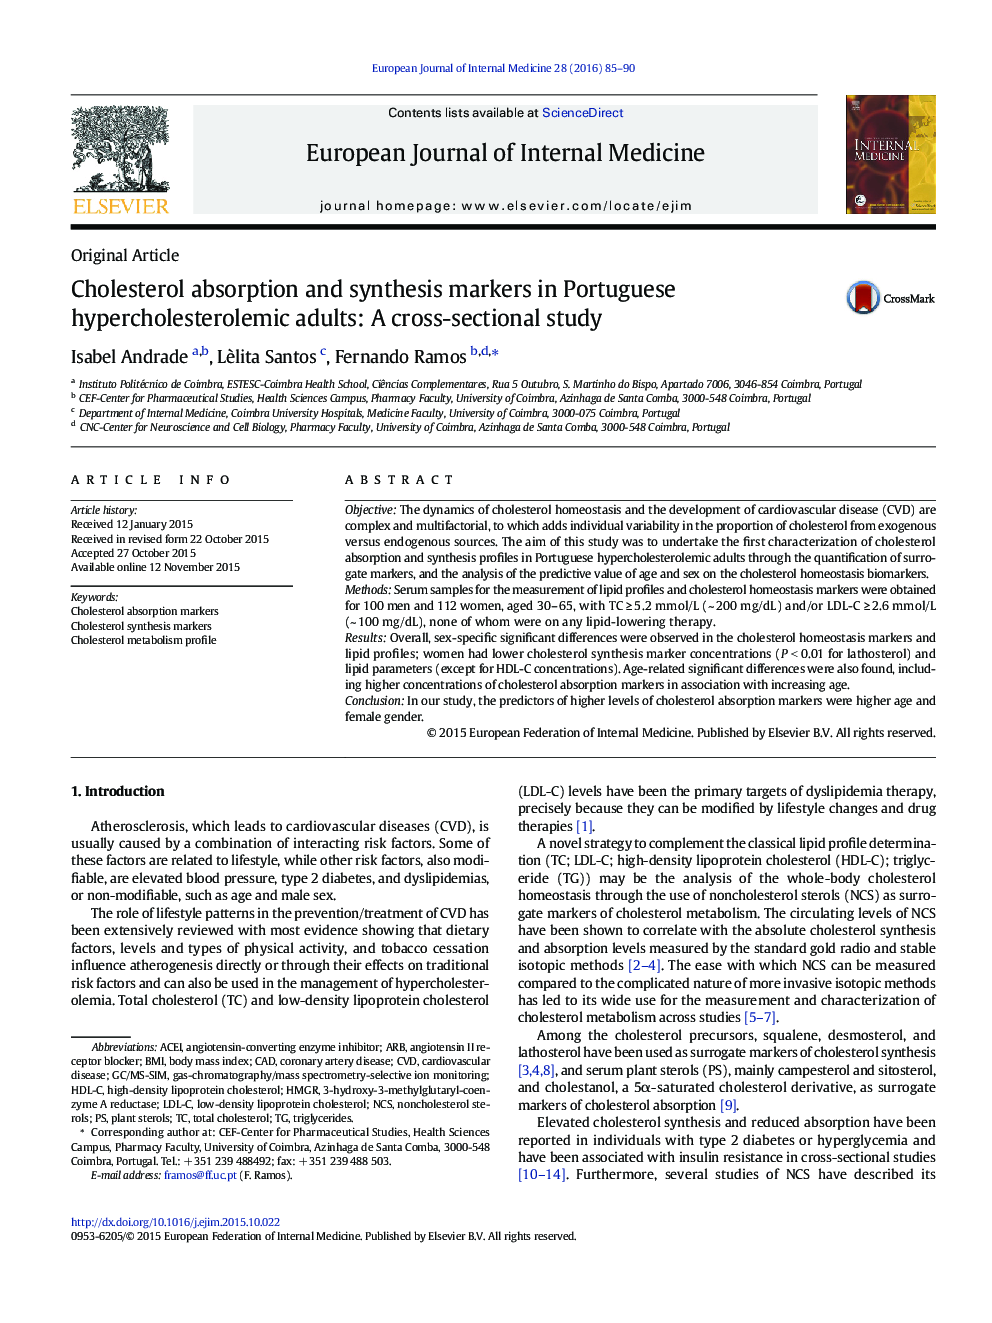 نشانگر جذب و سنتز کلسترول در بزرگسالان پرکالری هیپوکلسترولمی بزرگسالان: یک مطالعه مقطعی 